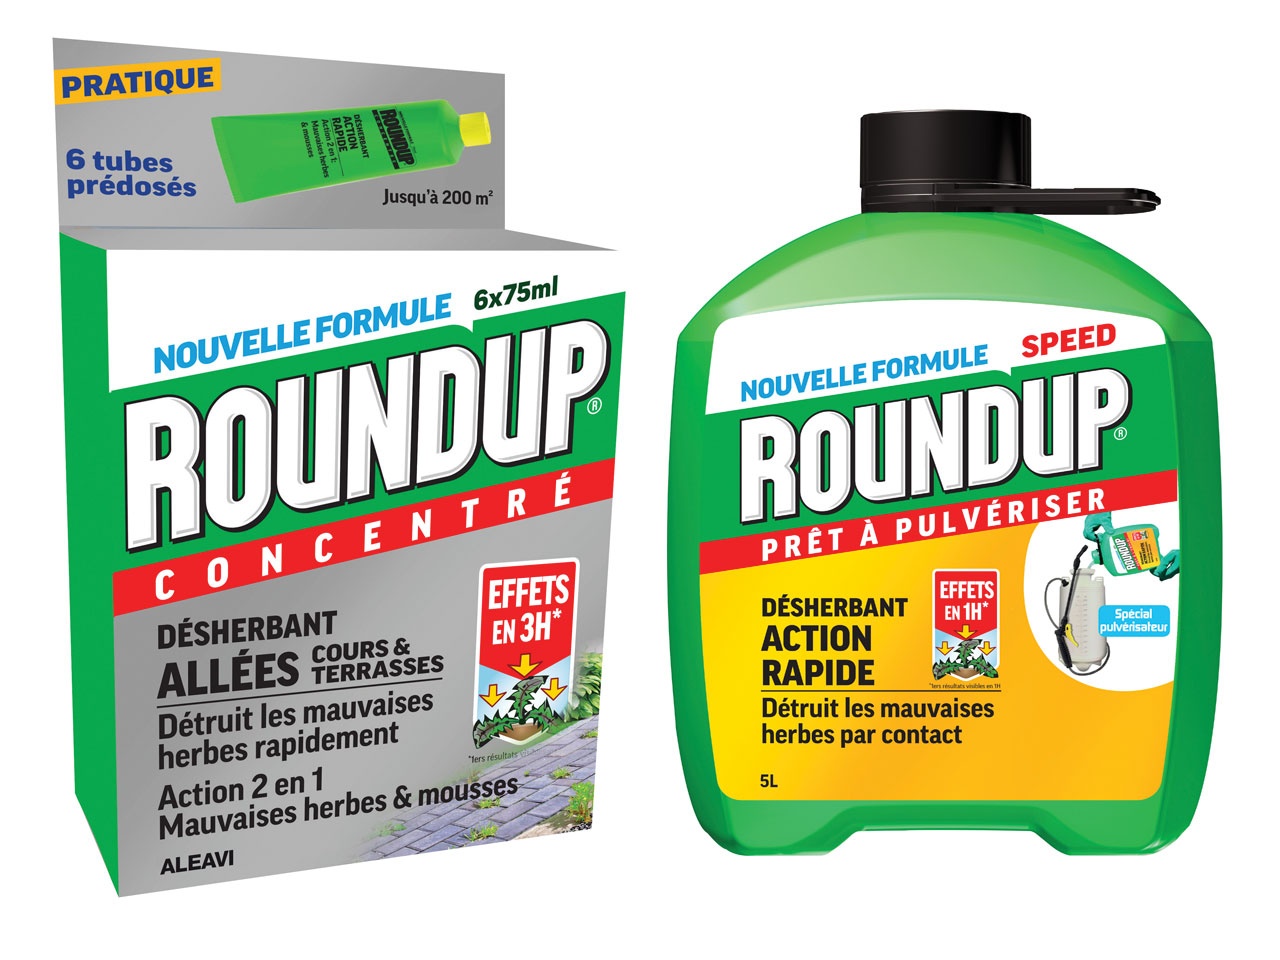 Roundup remplace le glyphosate